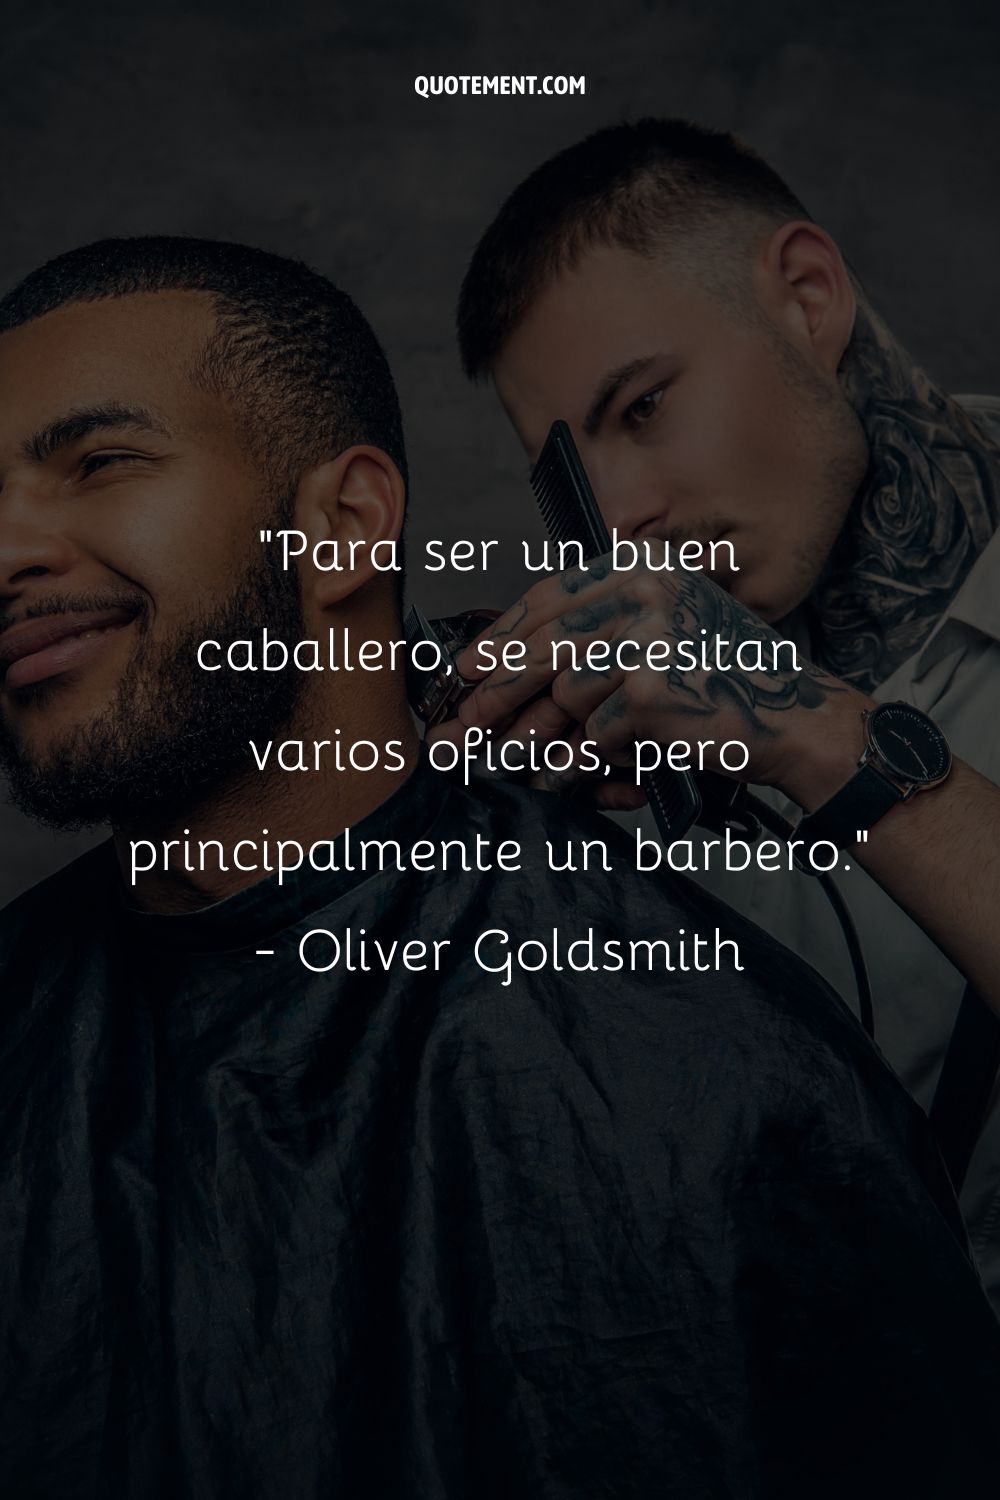 Para ser un buen caballero se necesitan varios oficios, pero sobre todo el de barbero. - Oliver Goldsmith